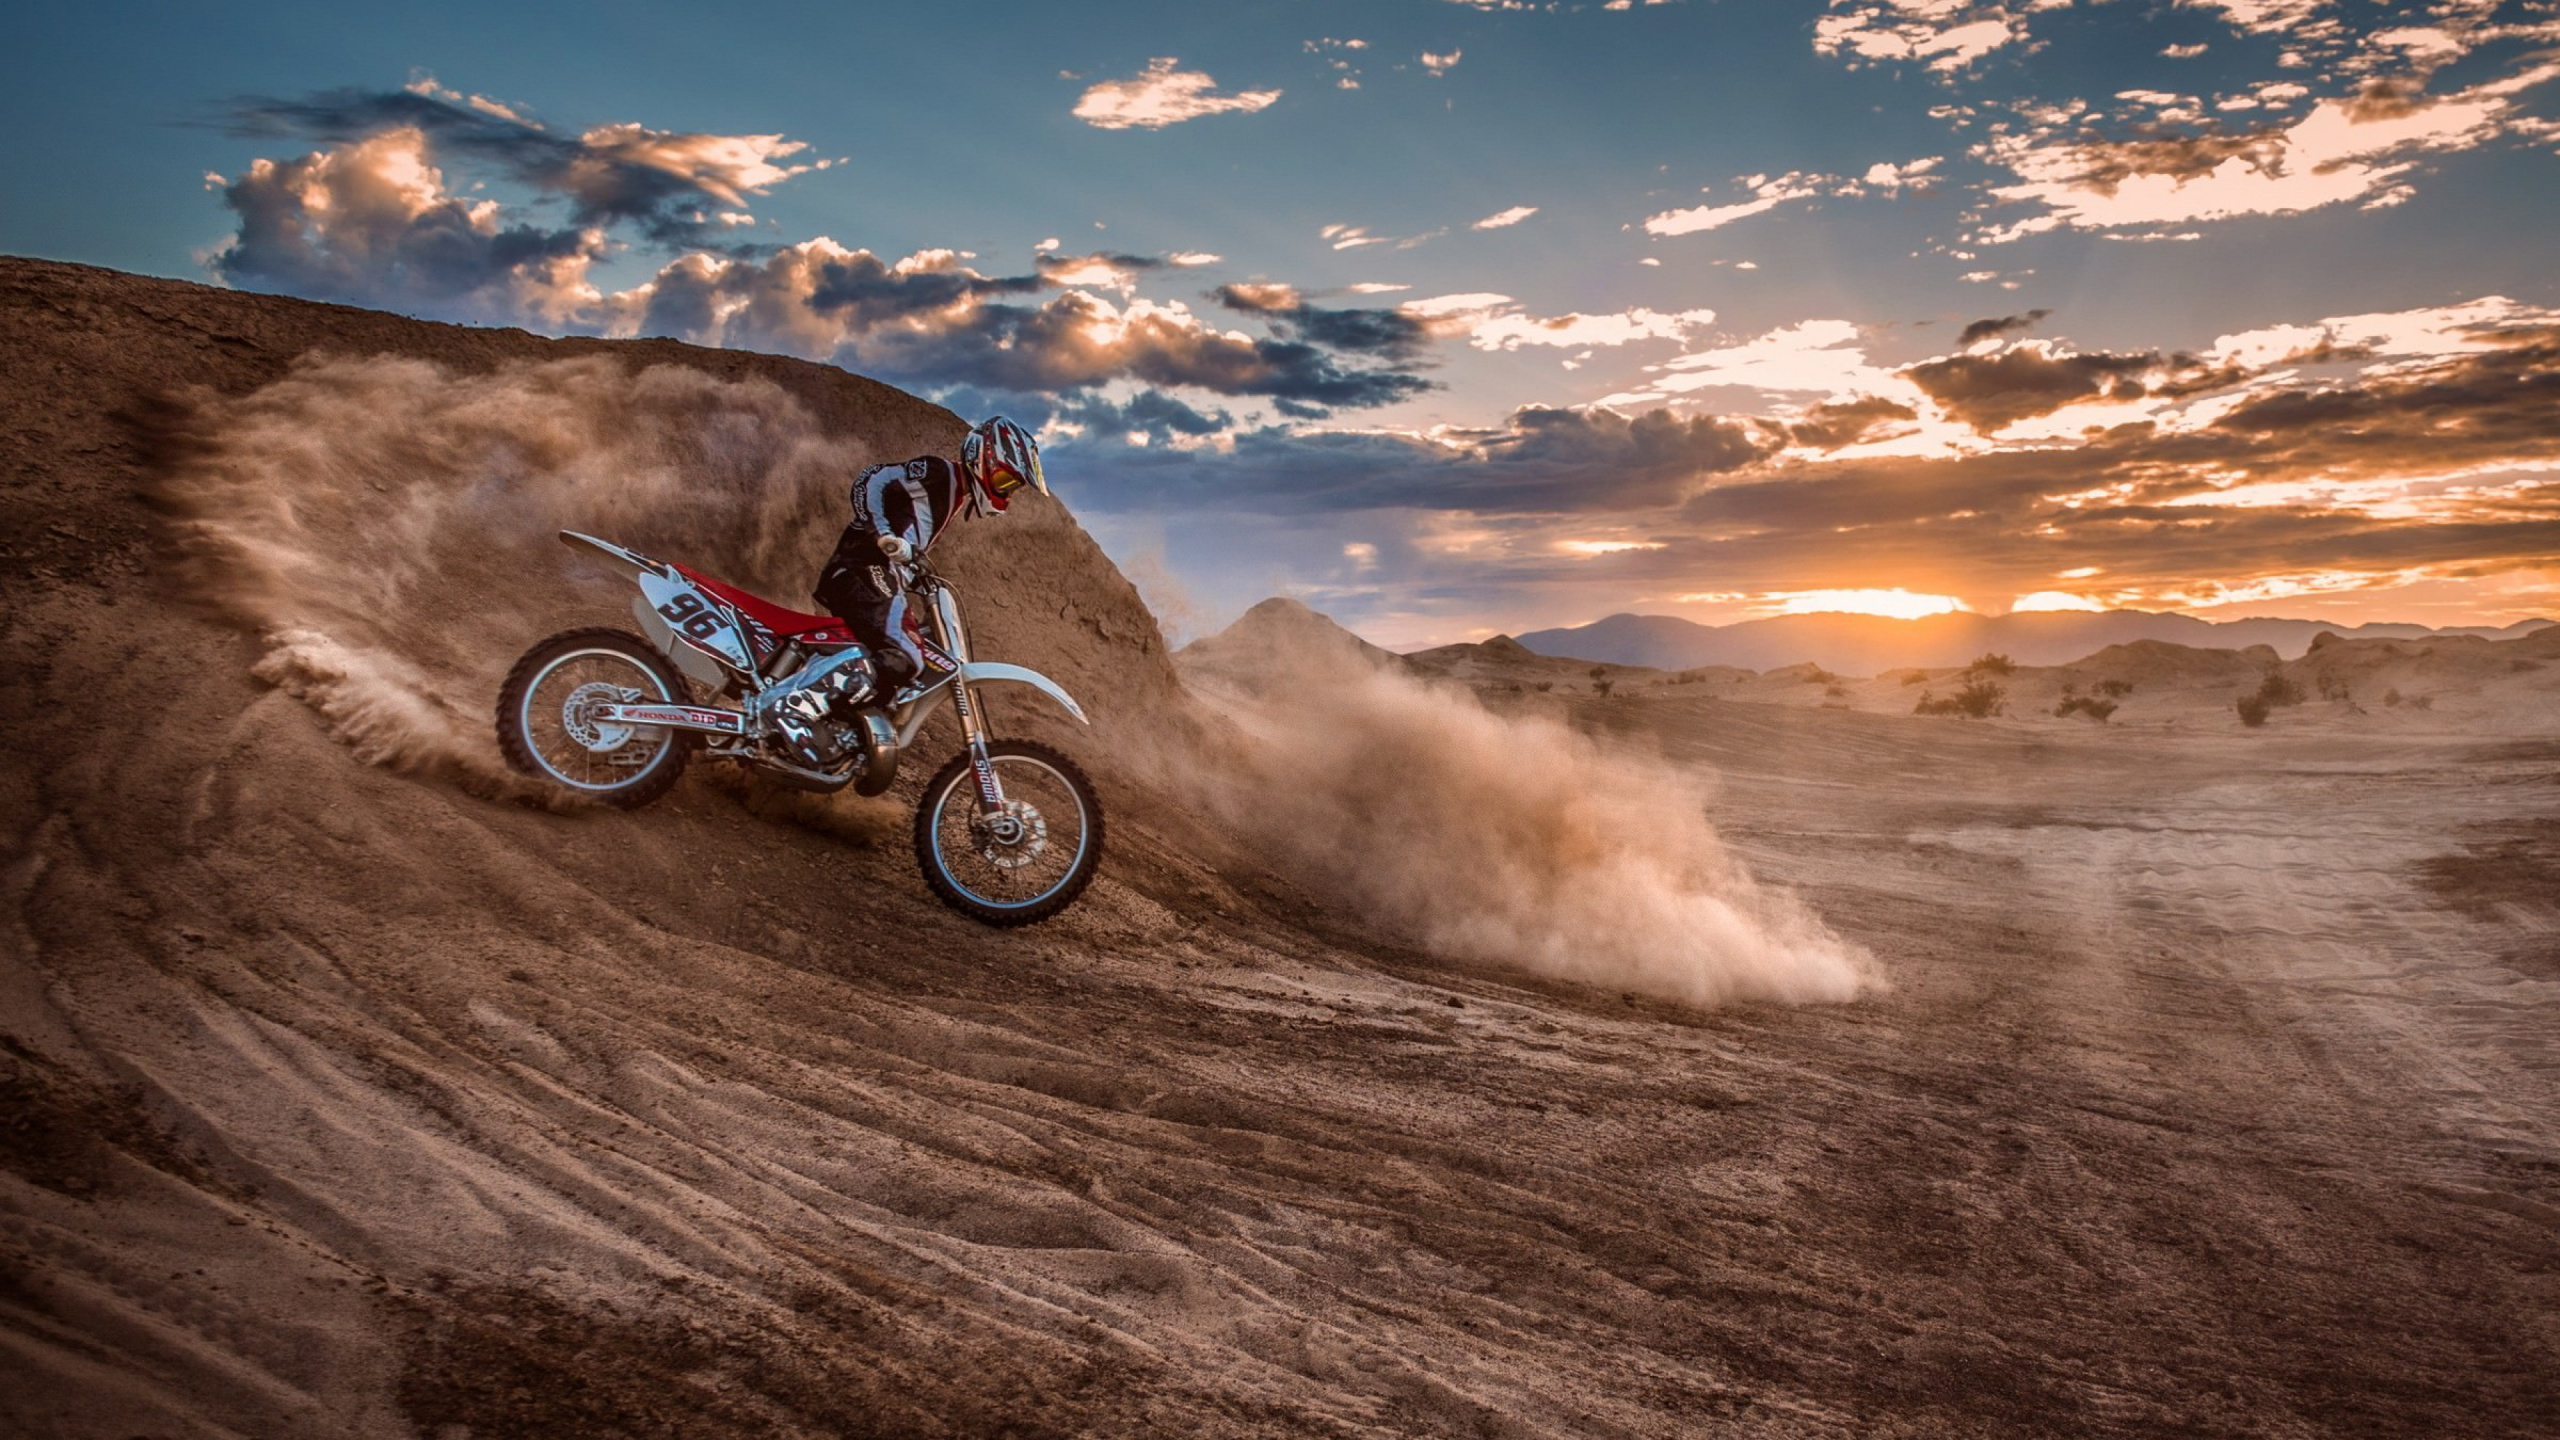 摩托车越野赛, 自由式的摩托车越野赛, 摩托车赛车, 极限运动, 的土壤 壁纸 2560x1440 允许